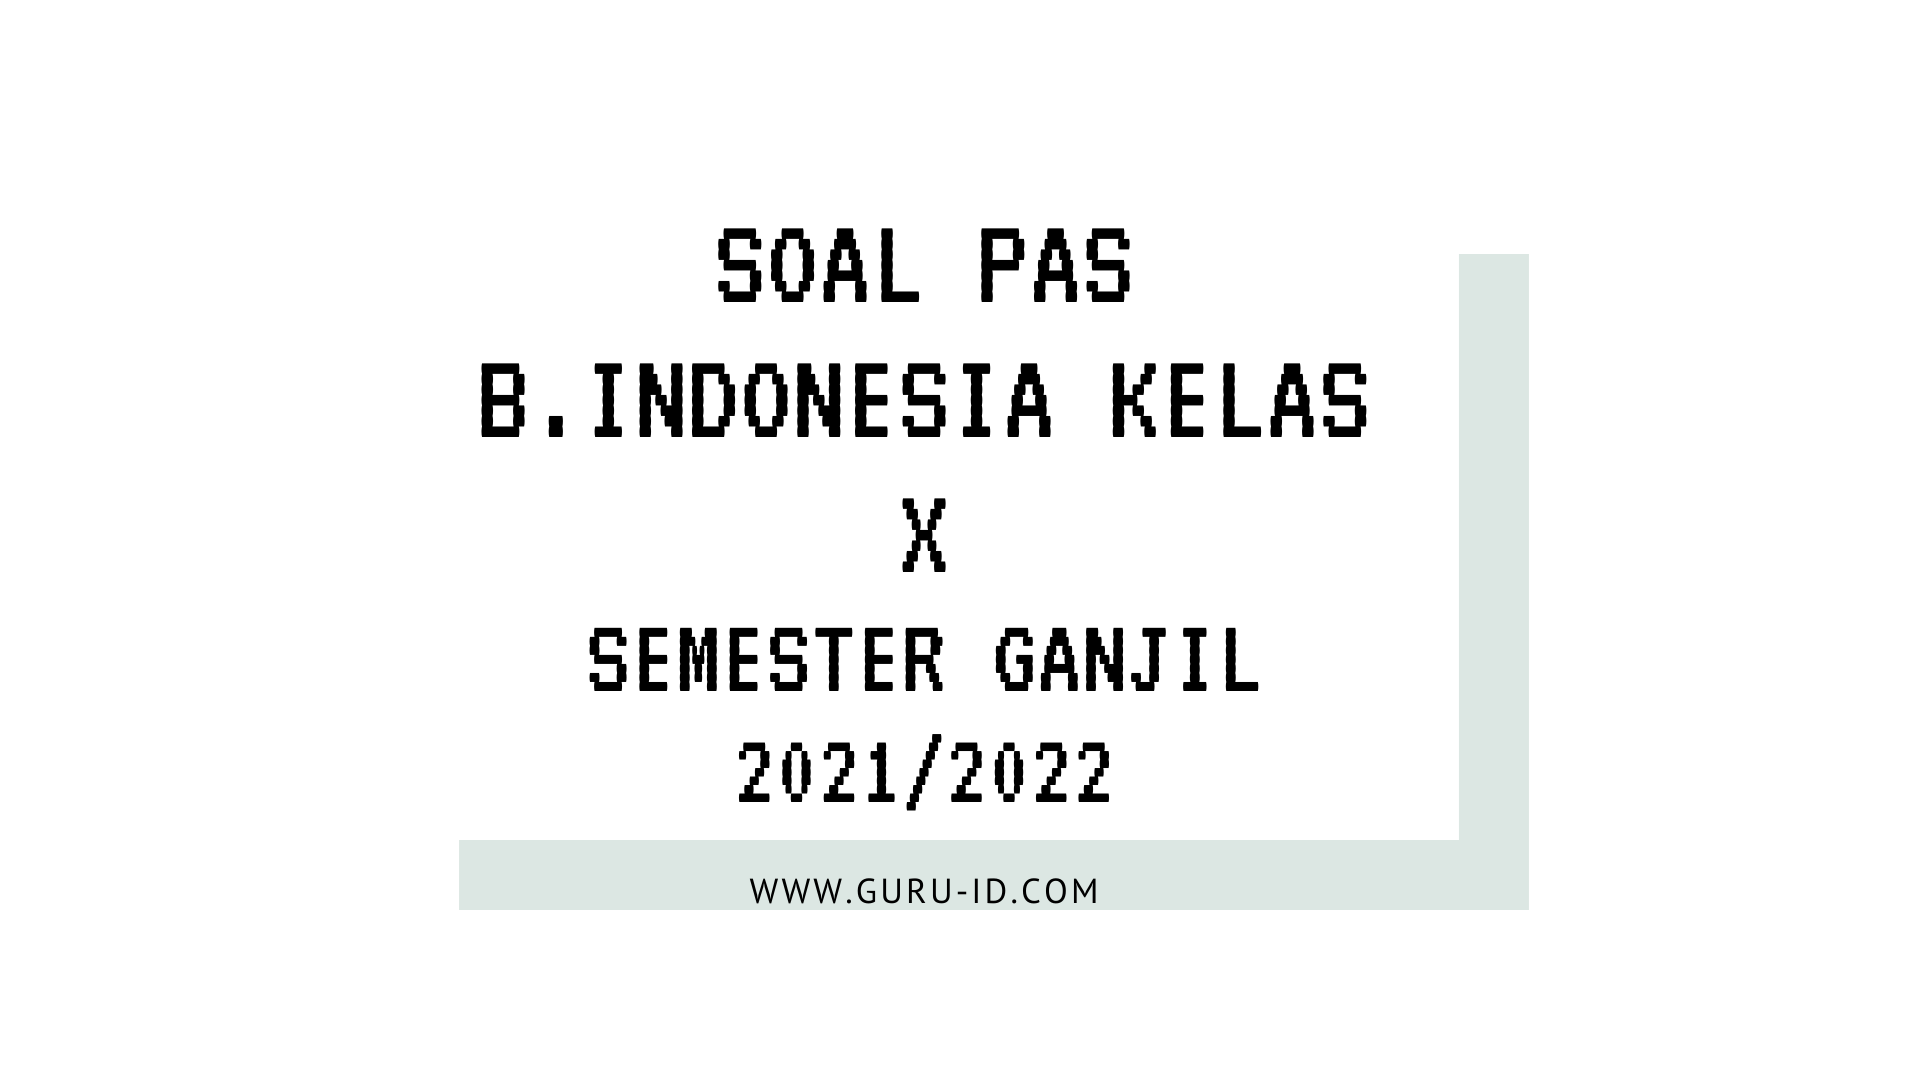 soal & Jawaban pas bahasa indonesia kelas 10 semester 1 k13 2021/2022